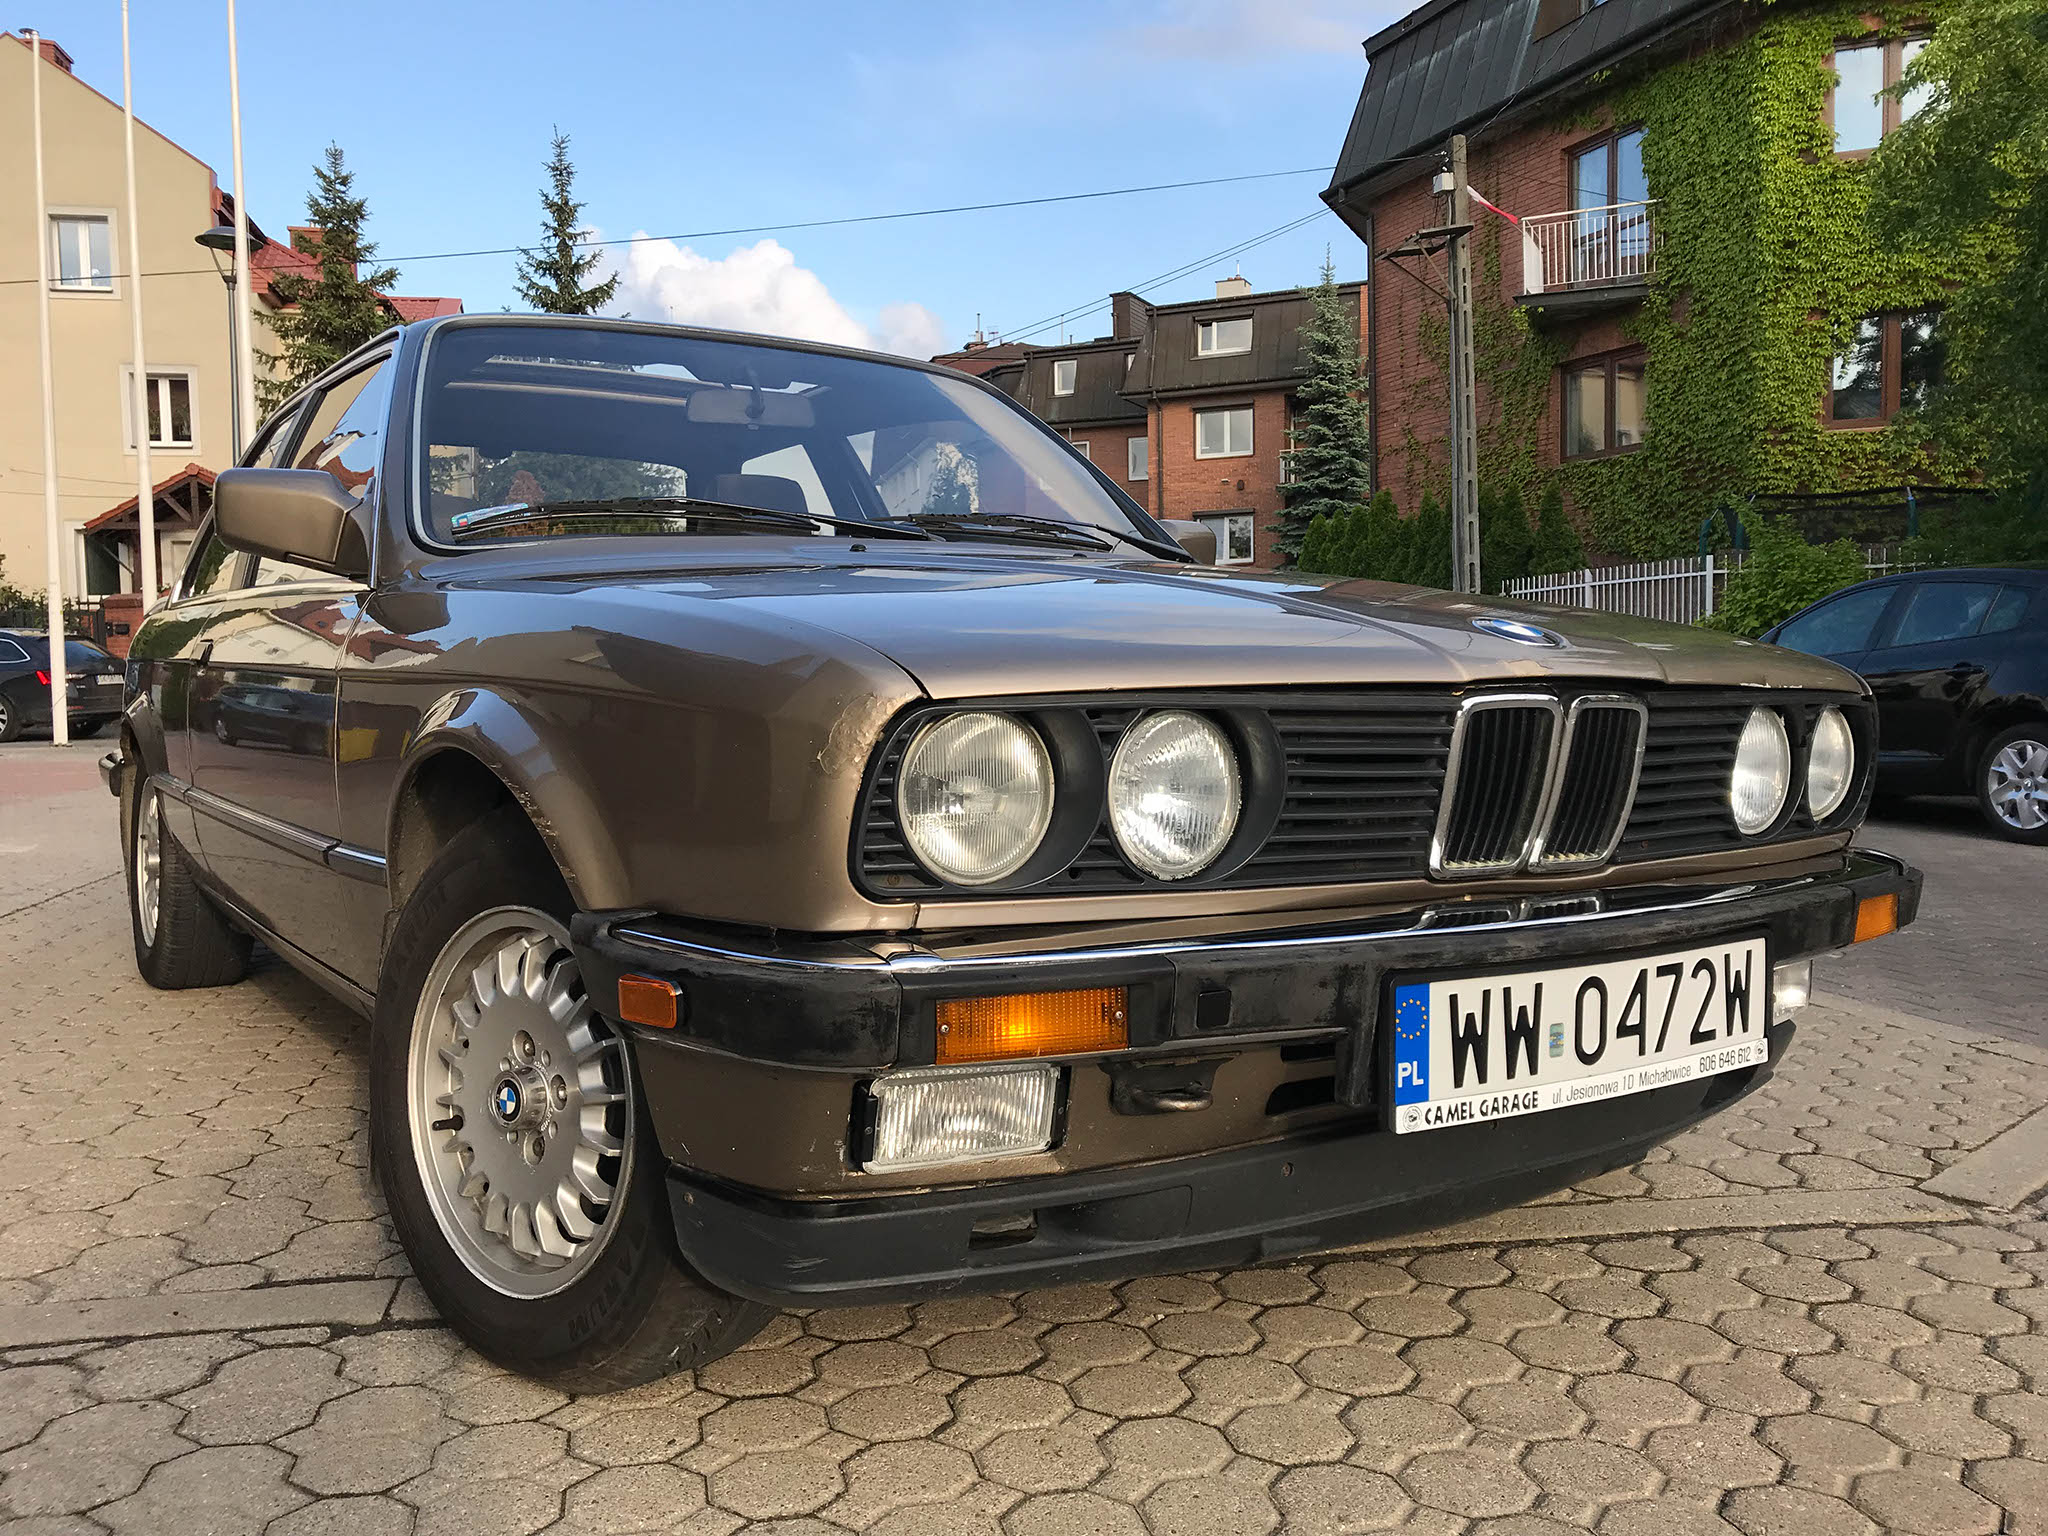 BMW 320i E30 1984 19500 PLN Warszawa Giełda klasyków